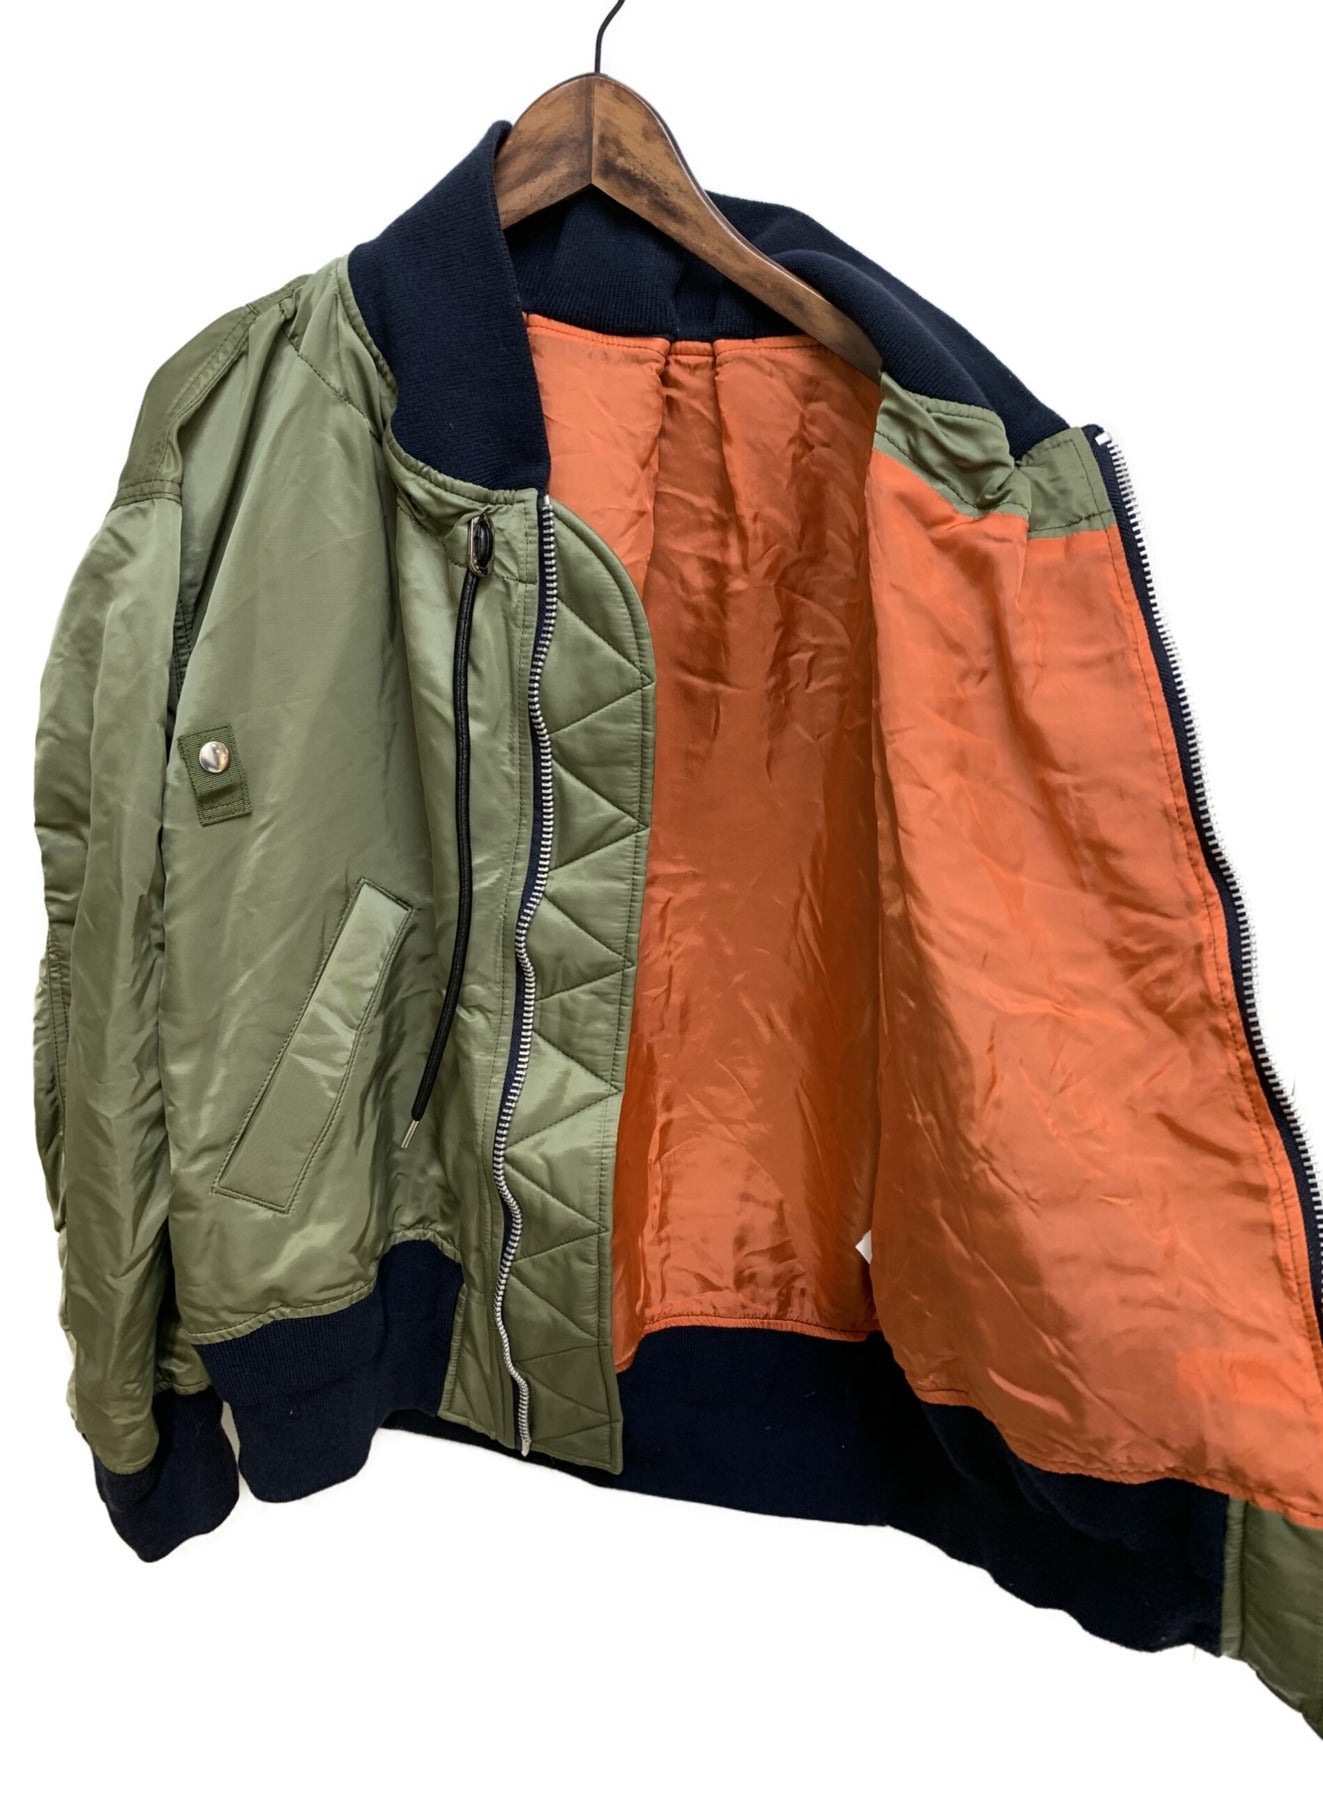 Sacai MA-1 × Melton 재킷 19-04714